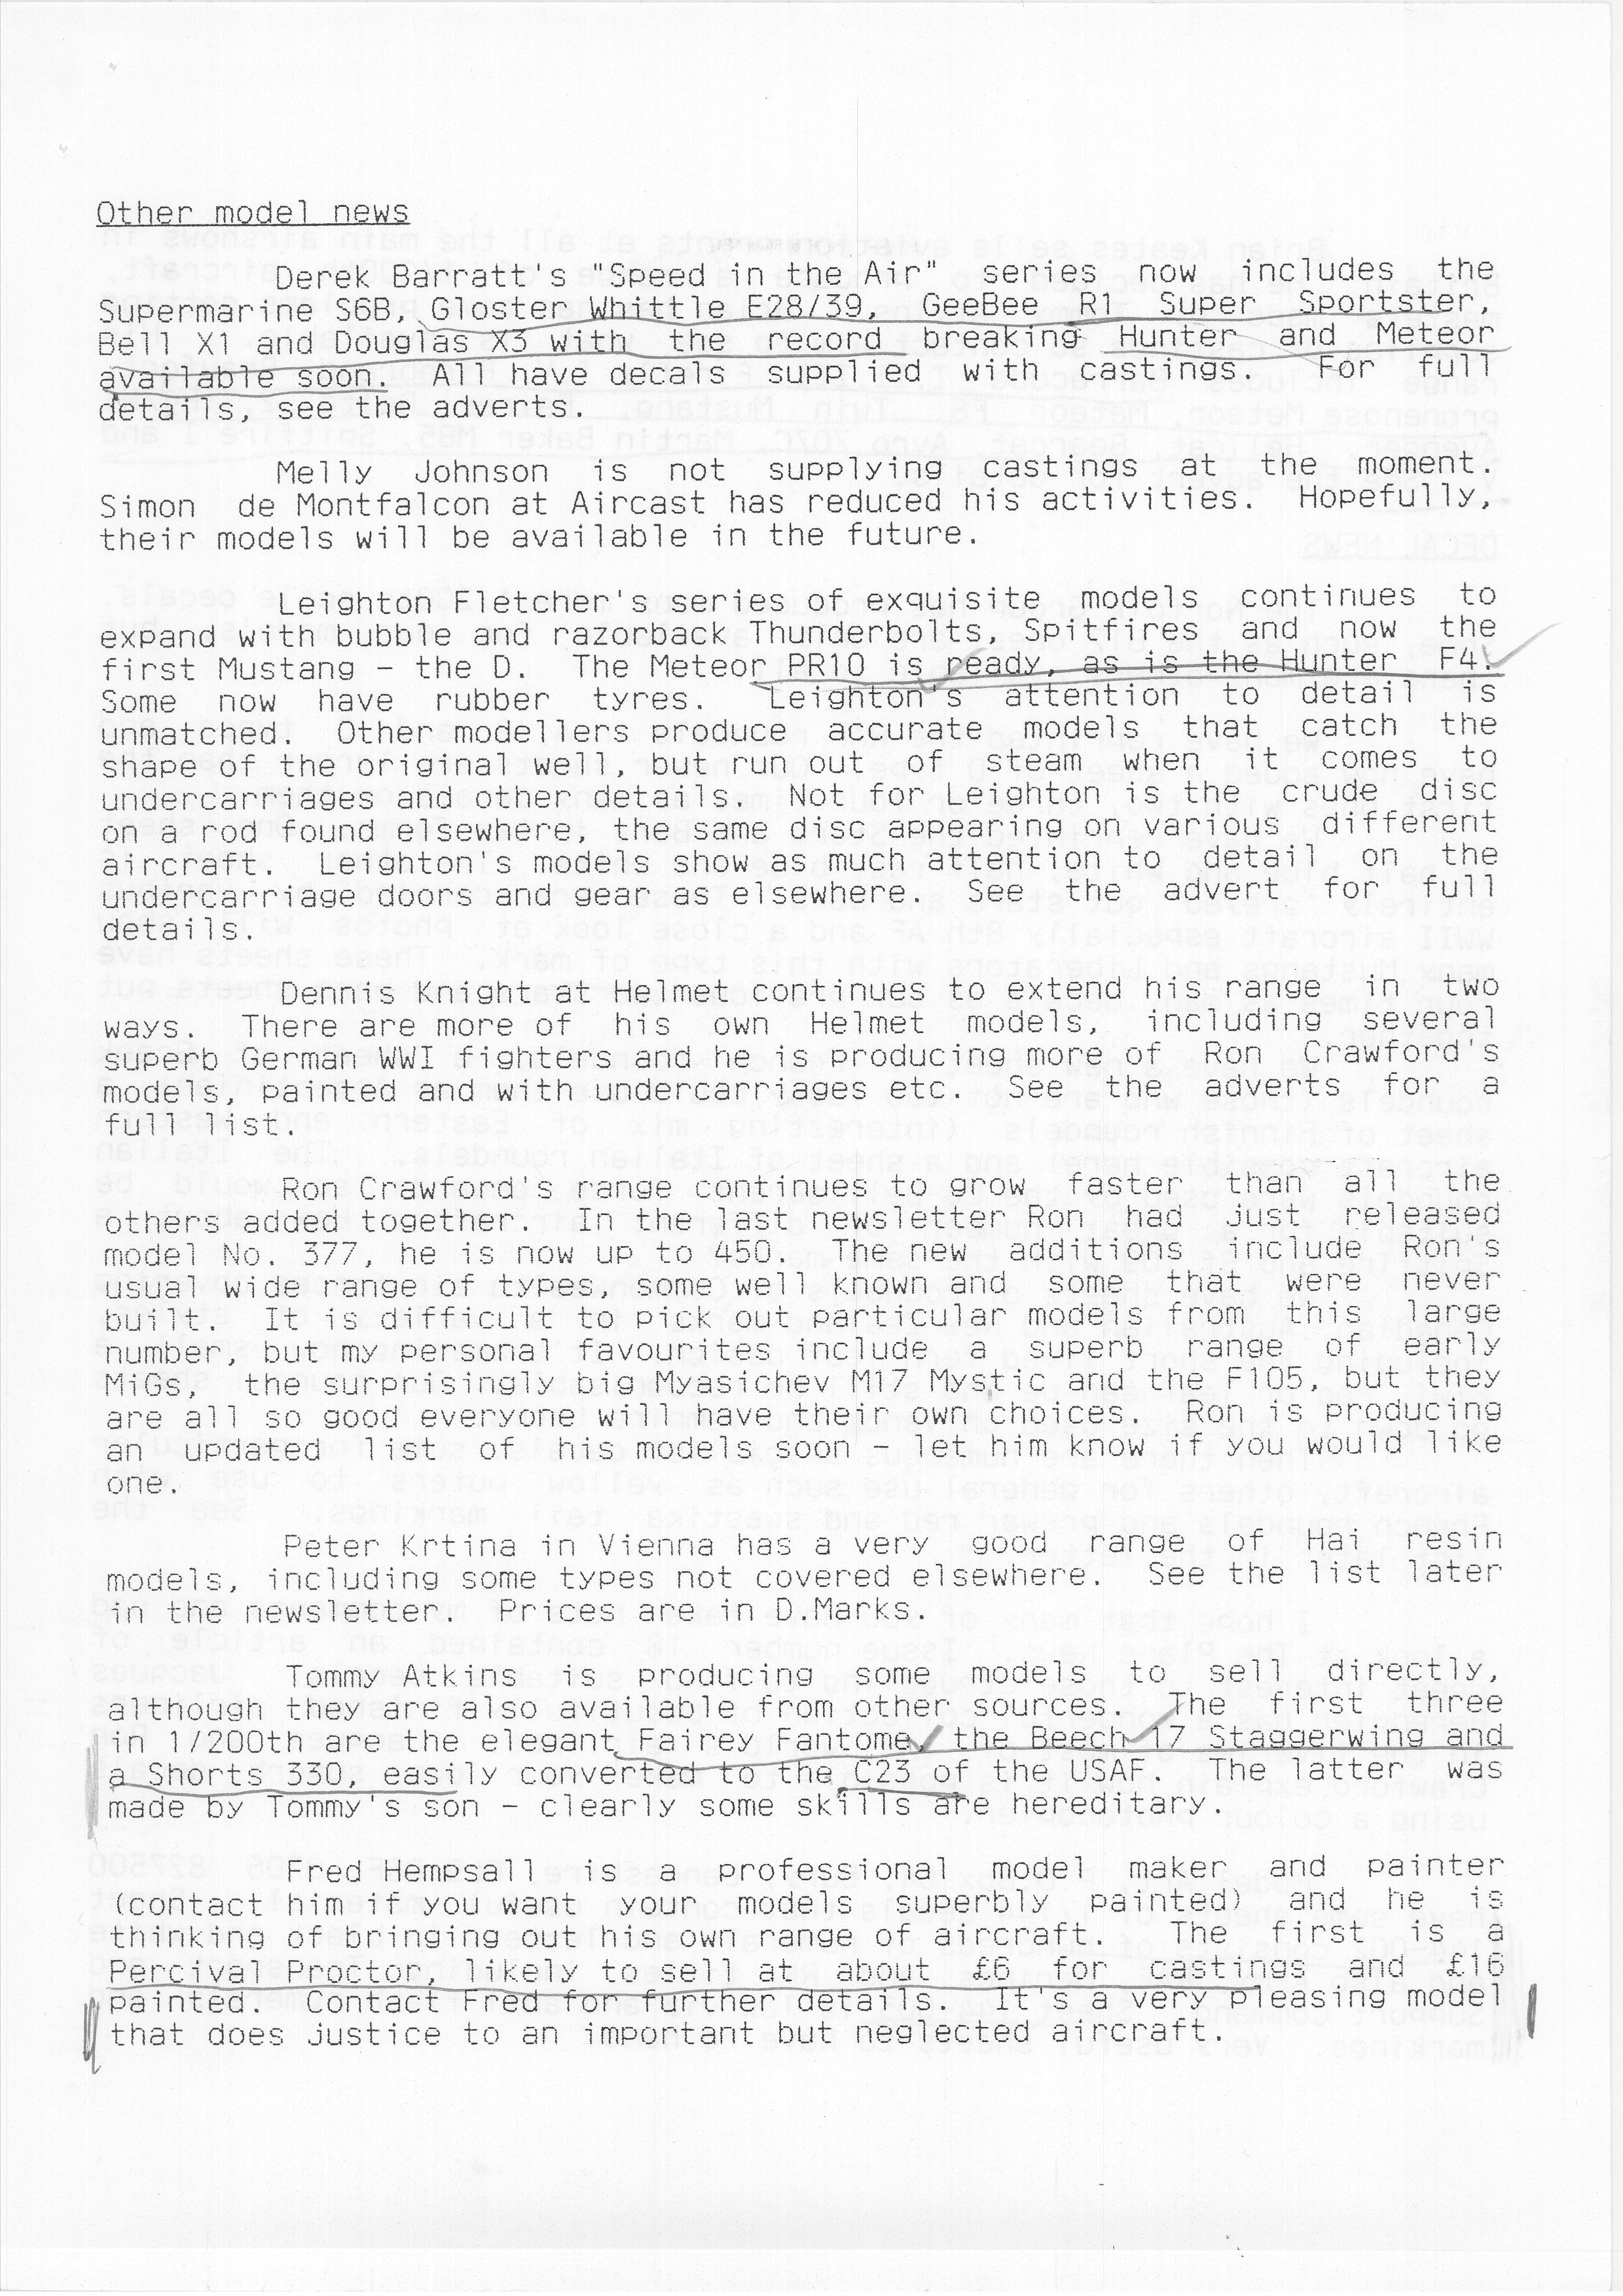 Norfolk Group_Newsletter No.4_November 199303.jpg